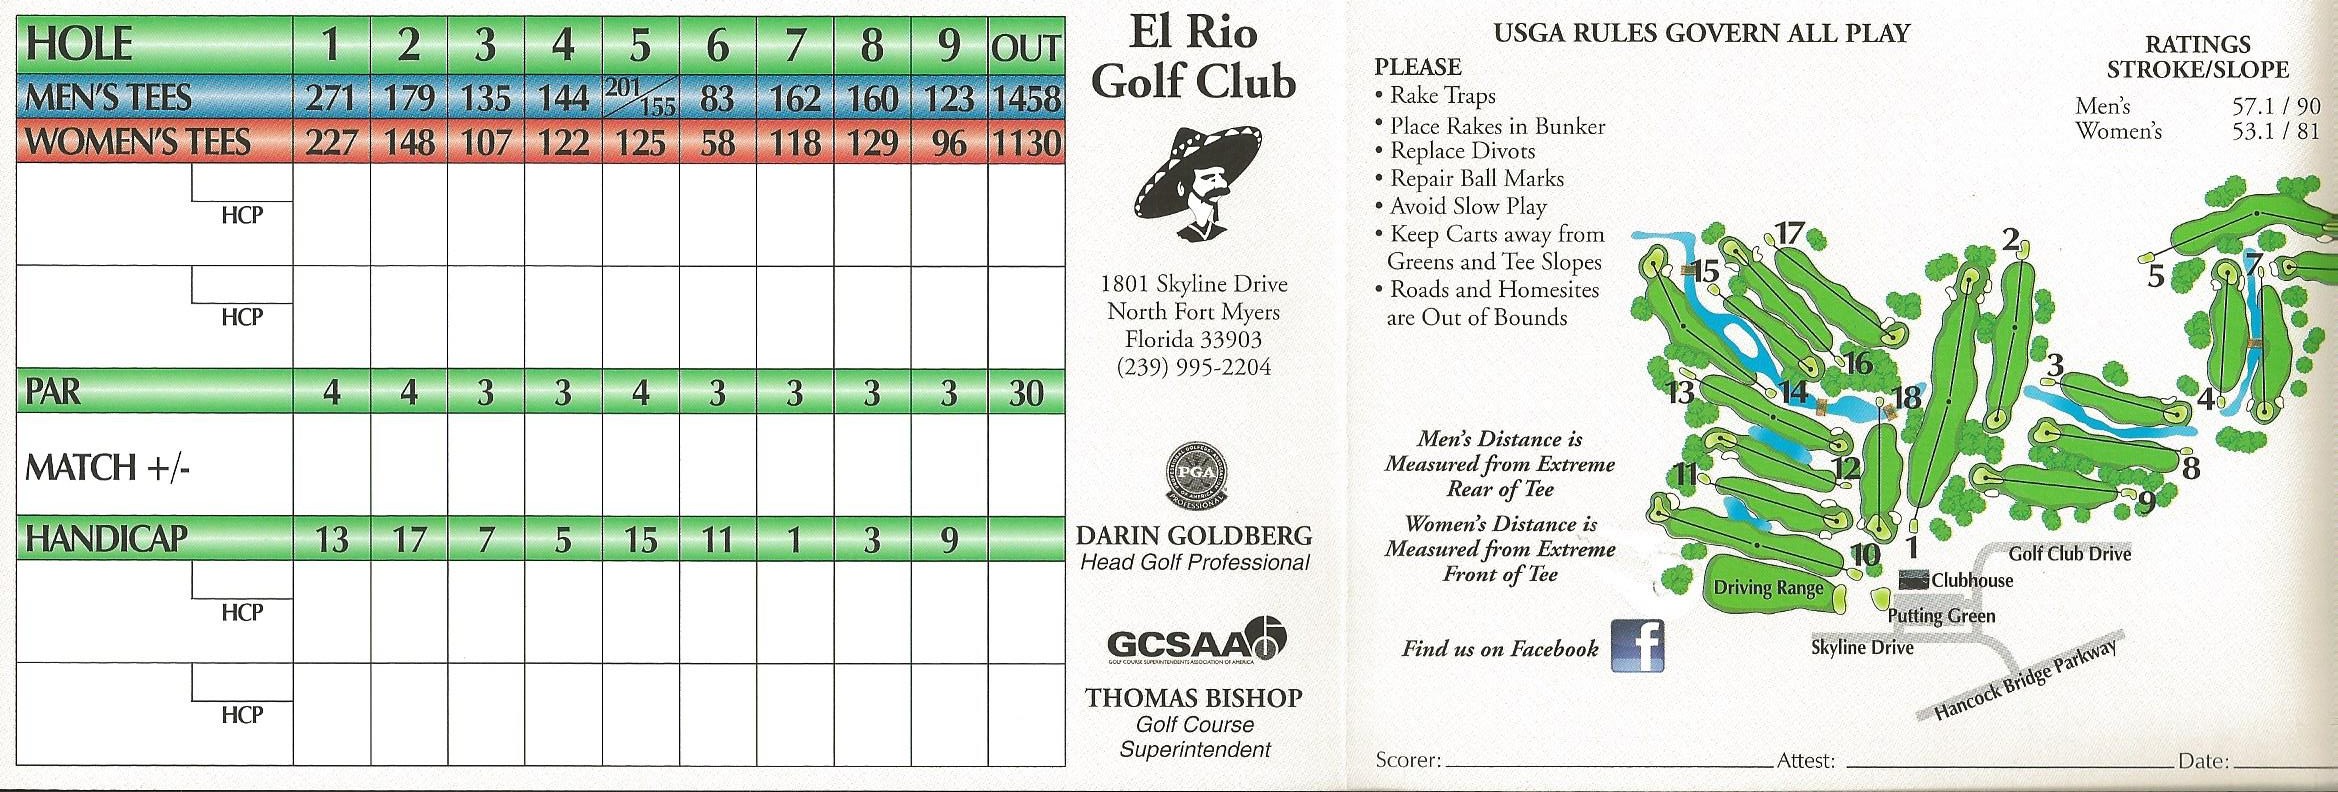 Scorecard - El Rio Golf Club.